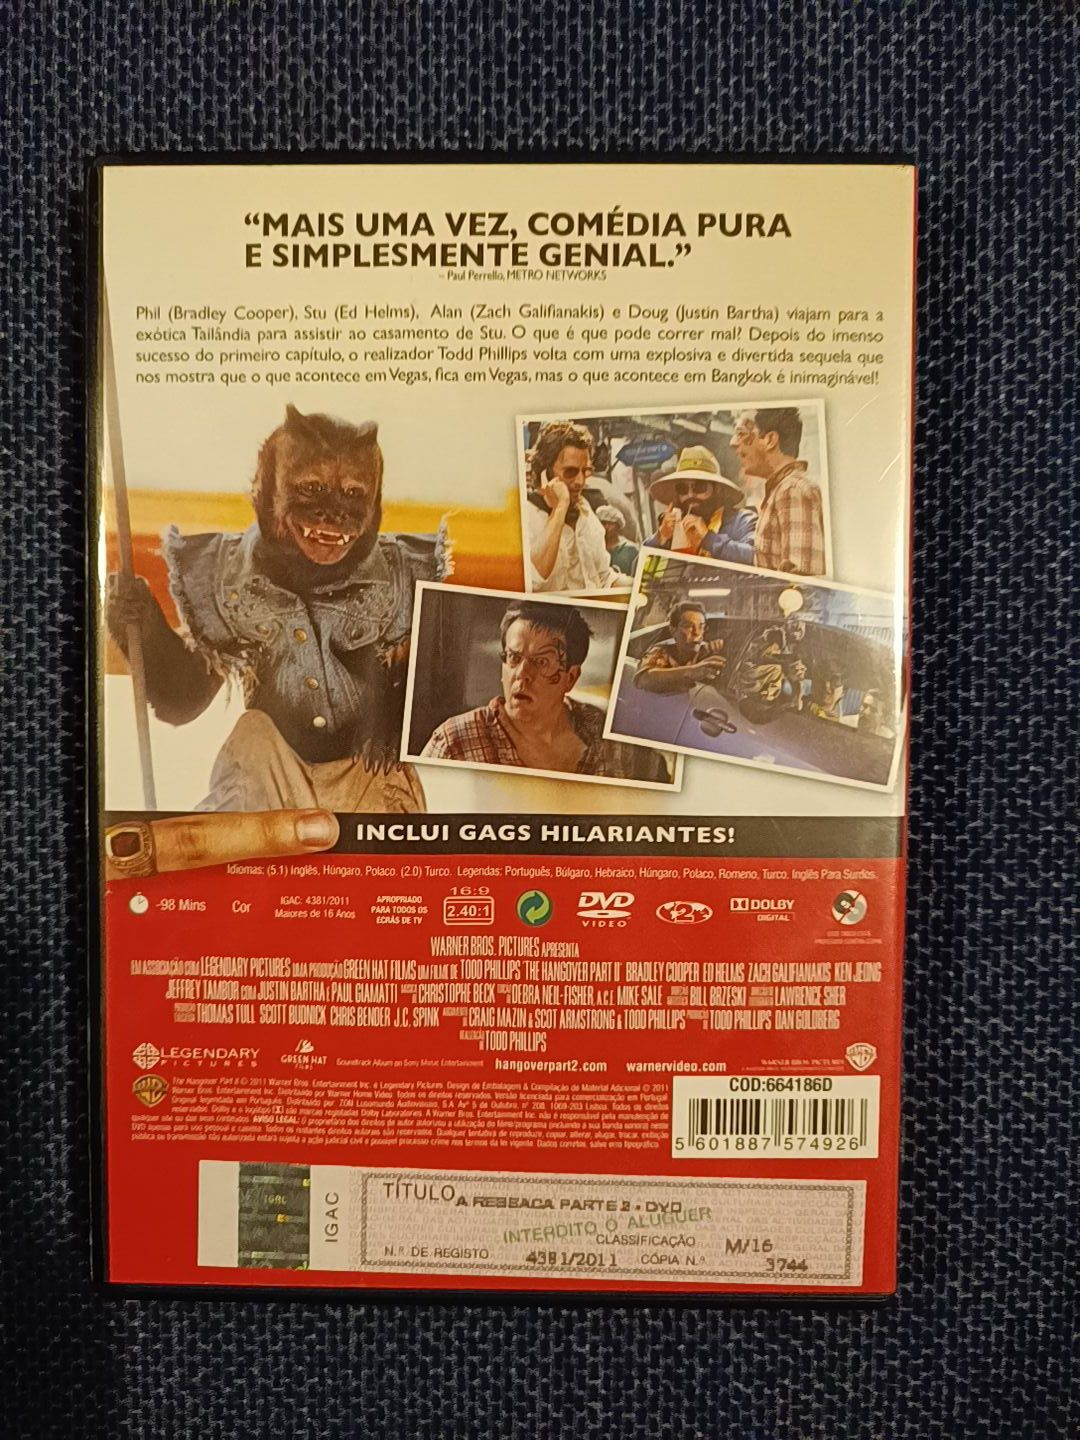 DVD do filme "A Ressaca - Parte II" (portes grátis)